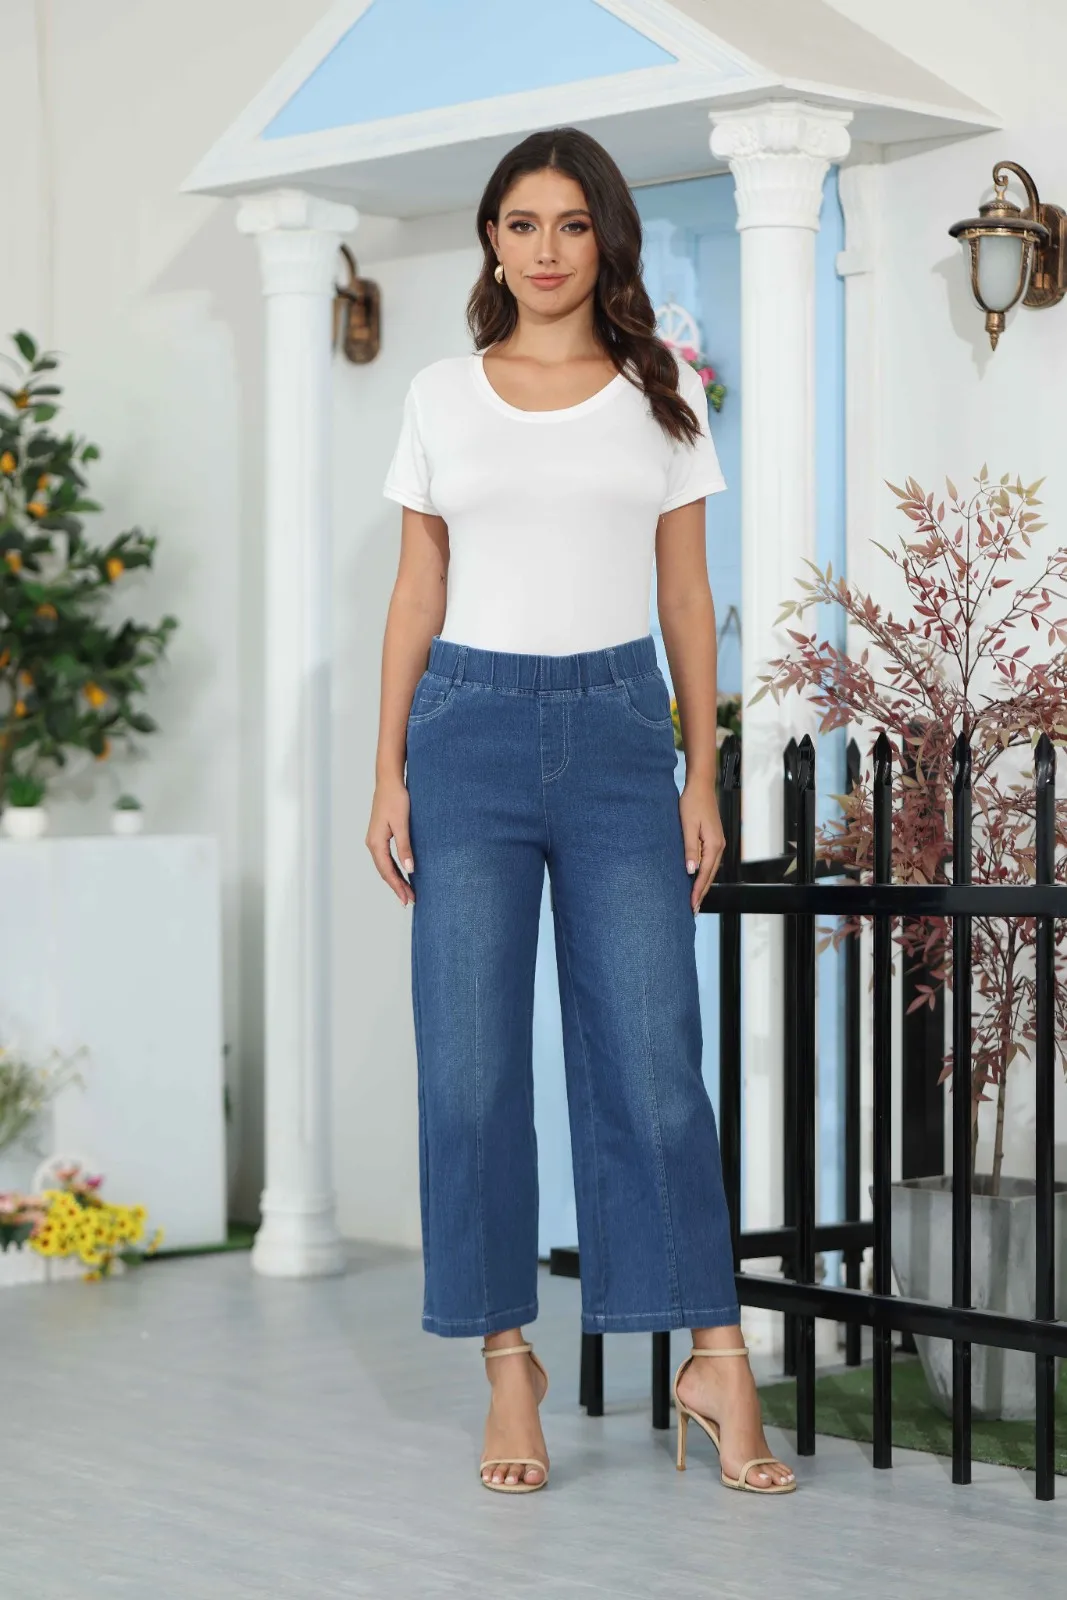 

Женские брюки со швами, джинсы с широкими штанинами спереди, Стрейчевые расклешенные джинсы стрейч с высокой талией в уличном стиле